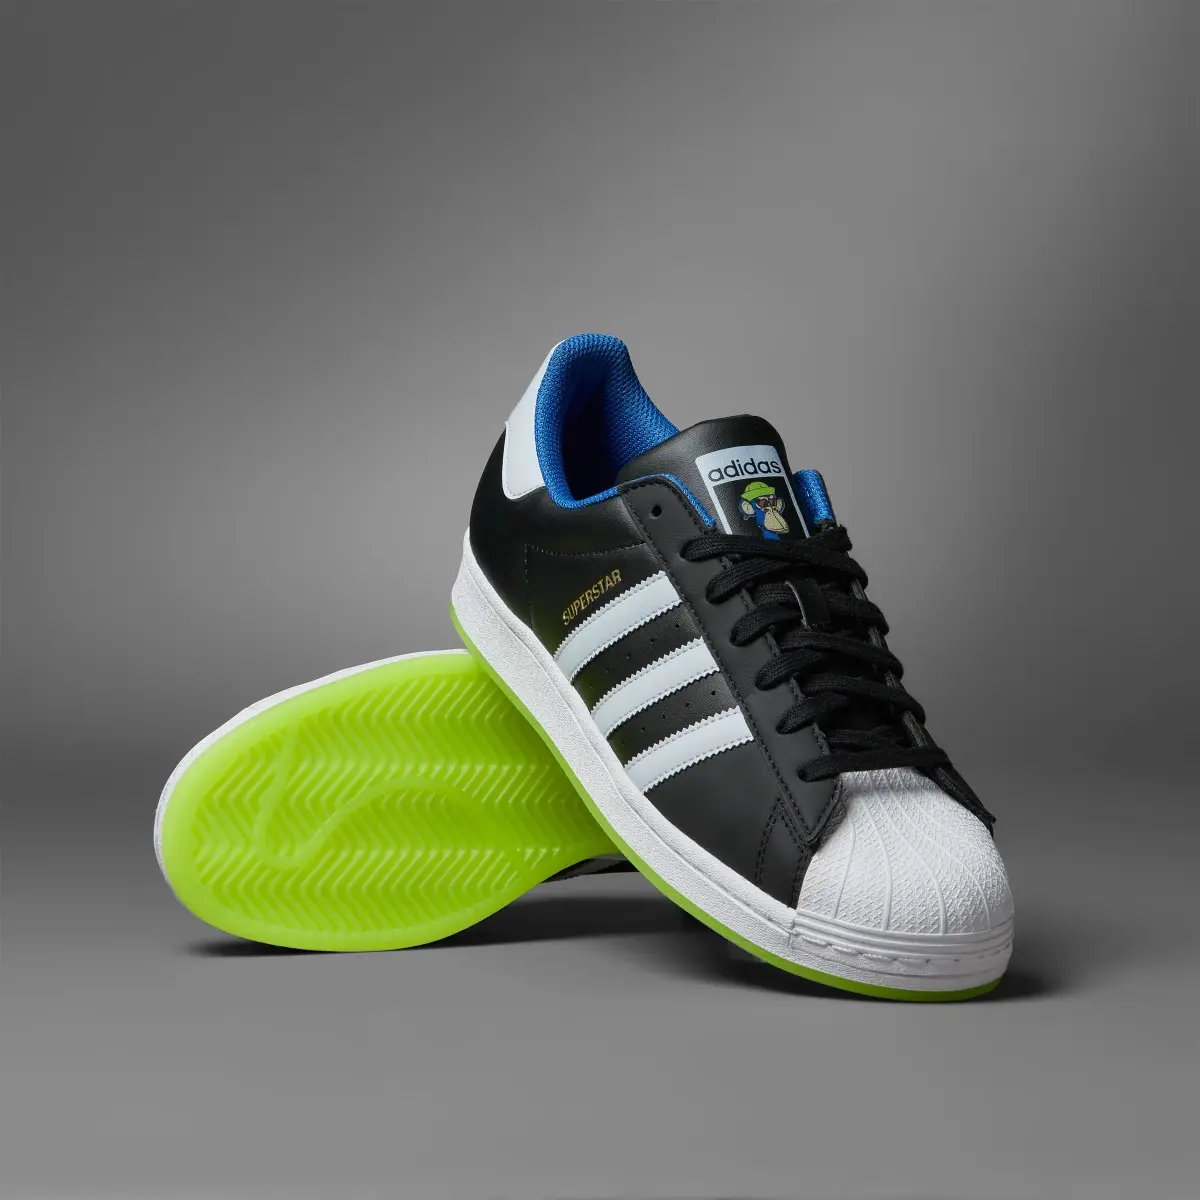 Adidas Superstar x Indigo Herz Shoes. 1